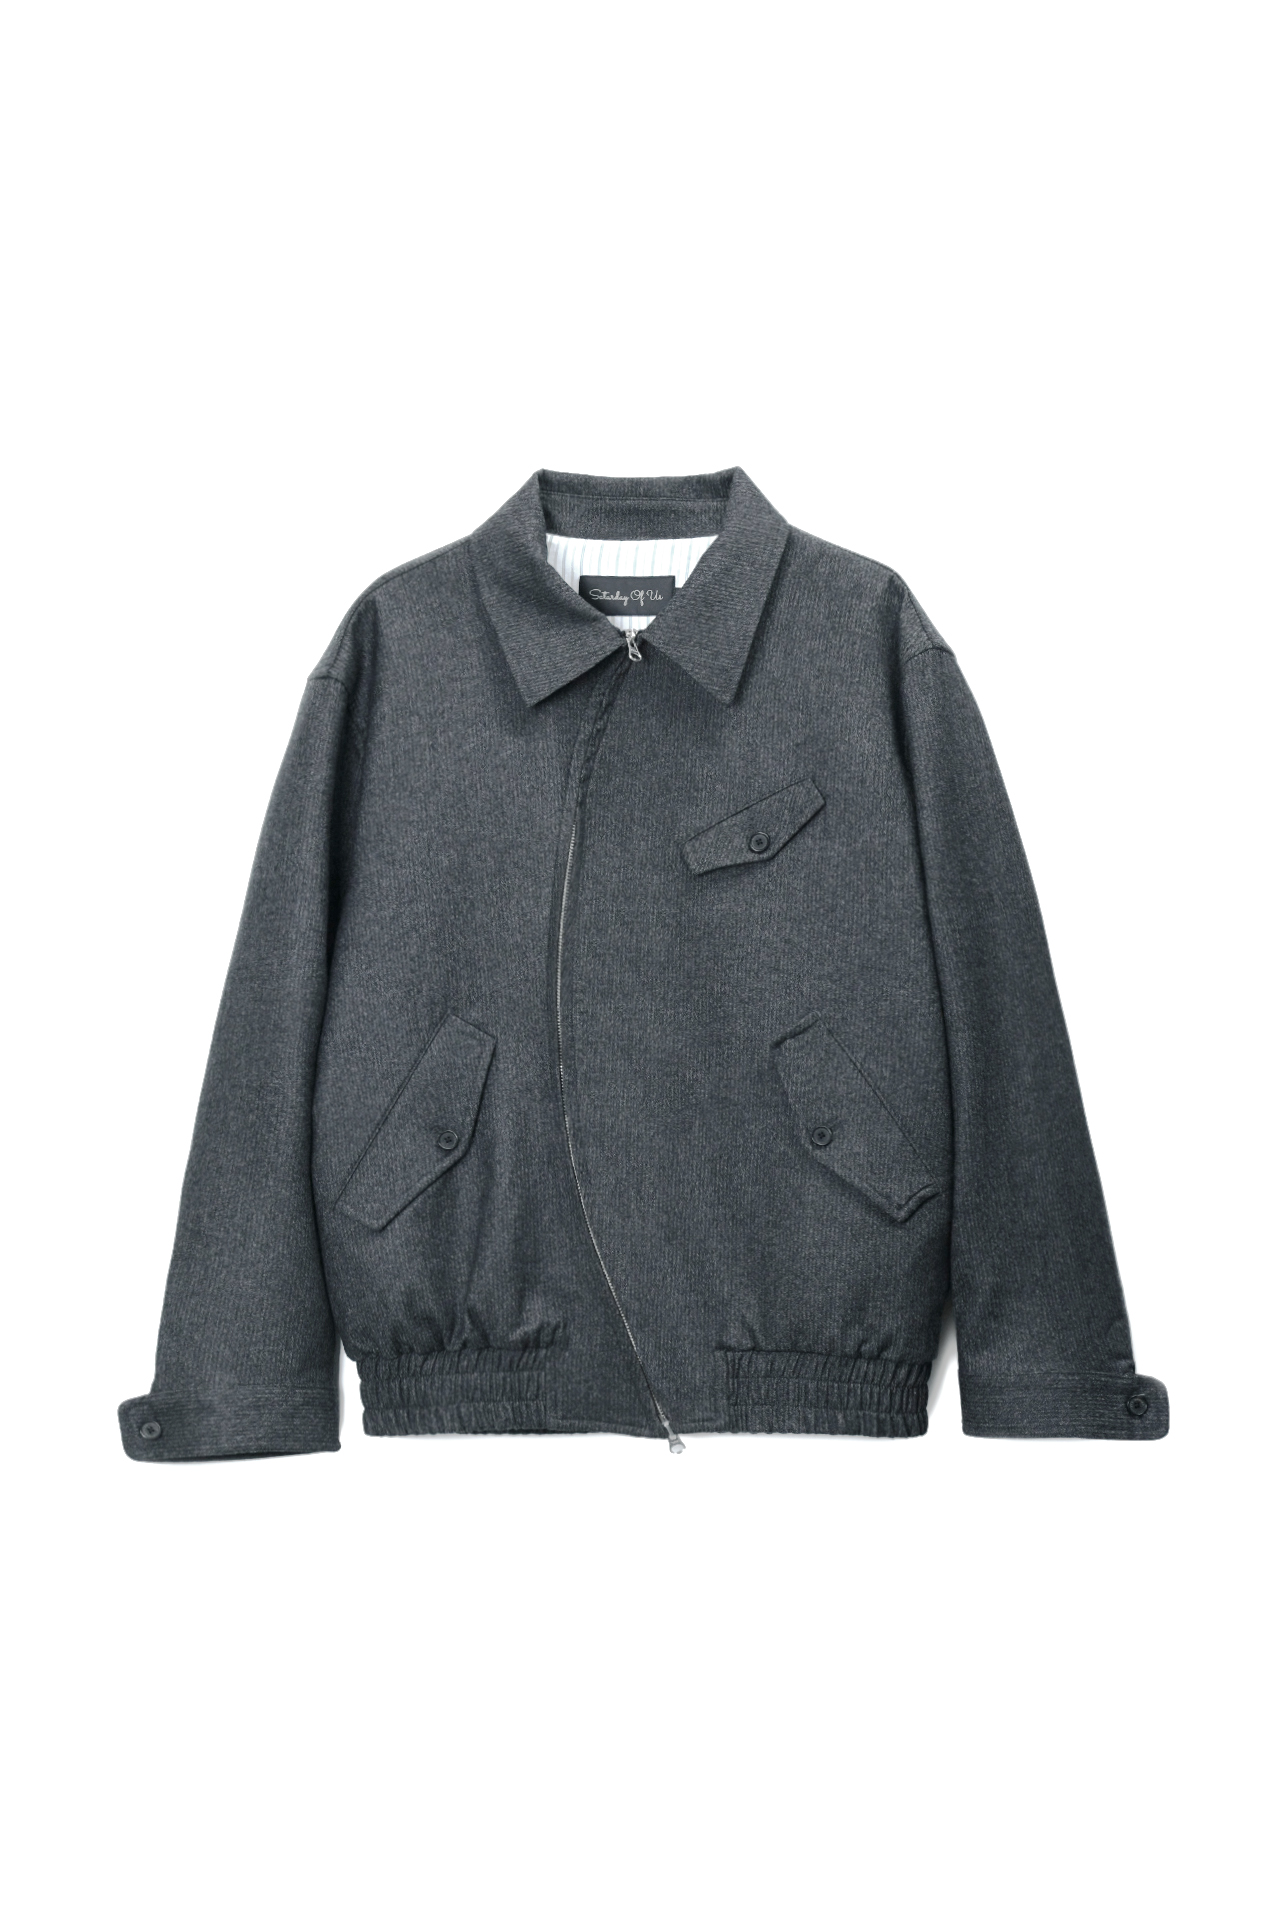 High Neck Round Stripe Wool Jacket Dark Grey(Round Zipper)